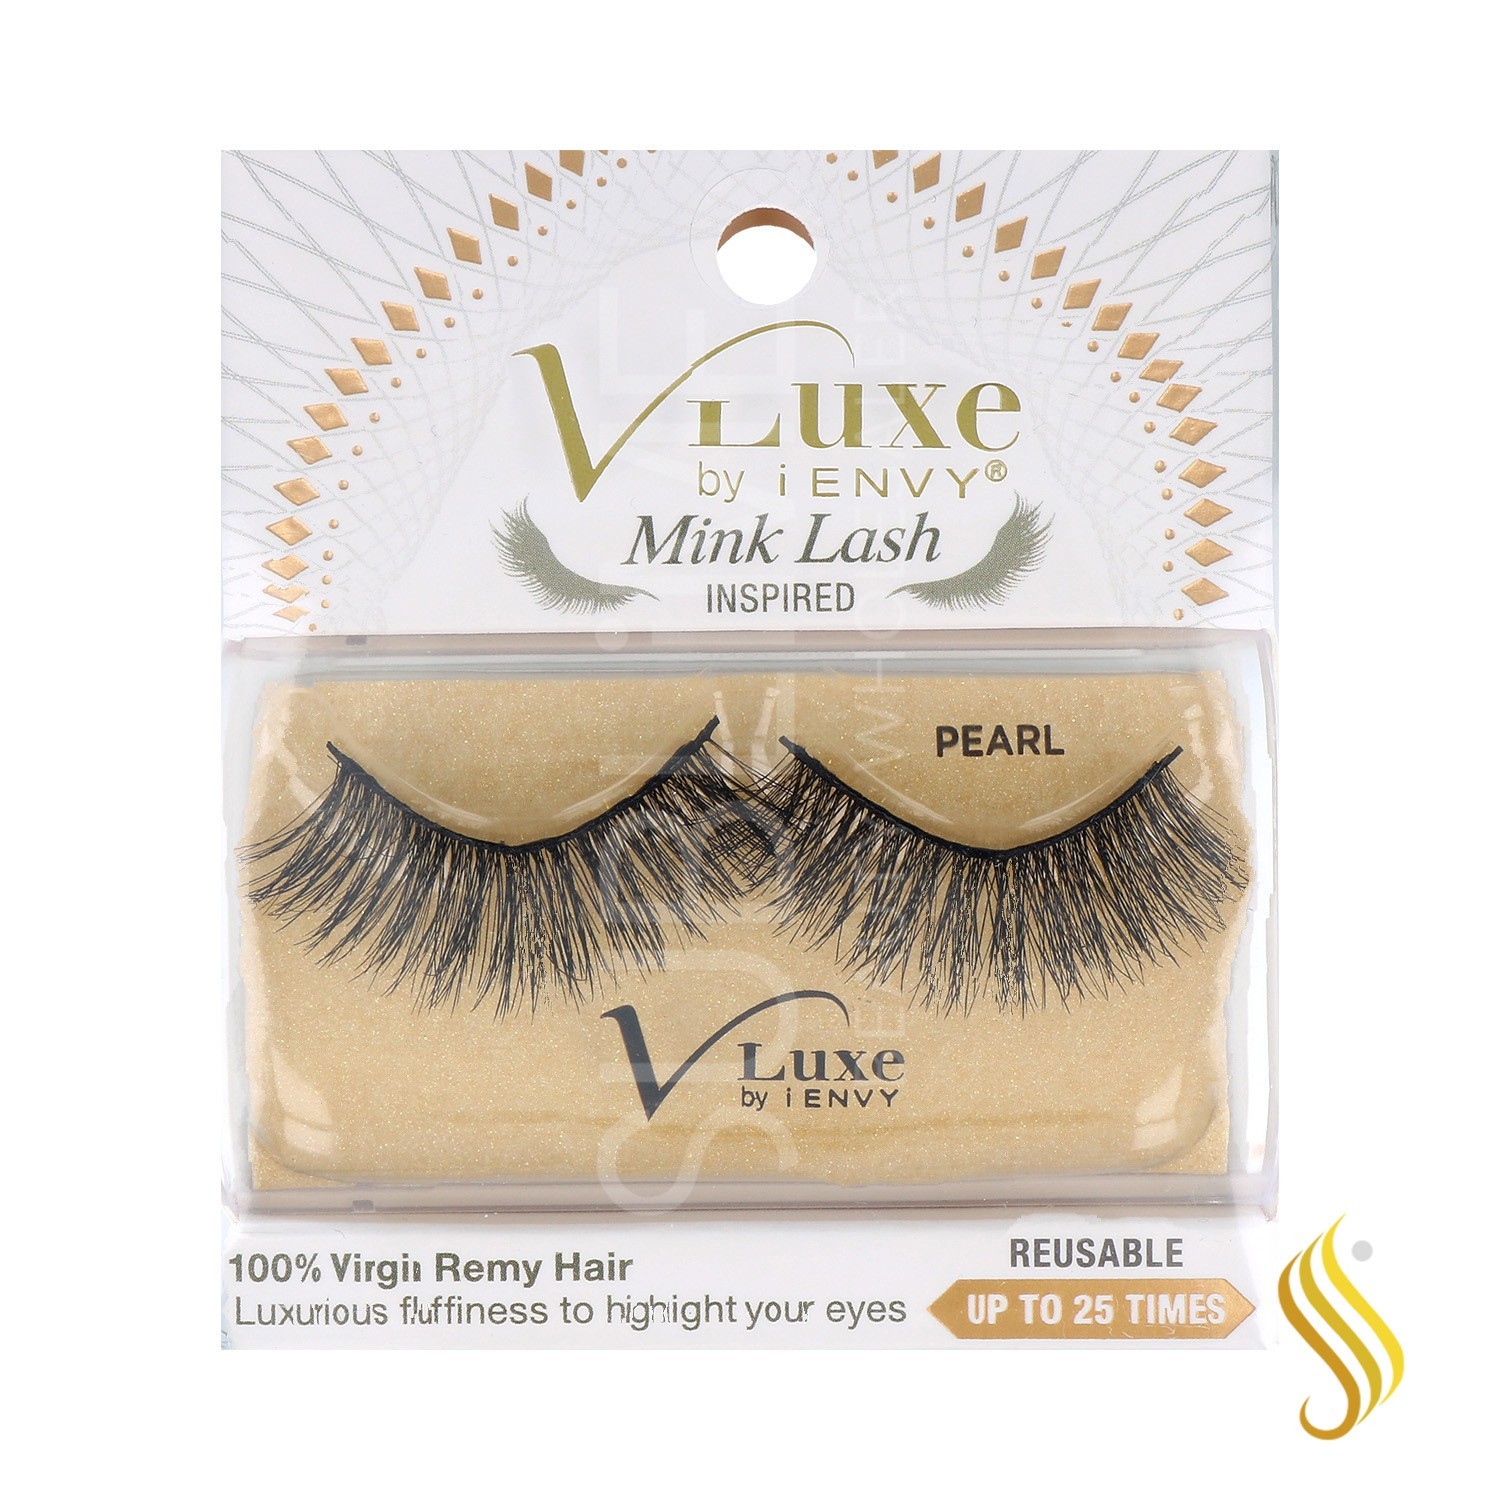 I Envy V Luxe Remy Hair Minklash/Pestana Inspired Pearl (Vlef01)